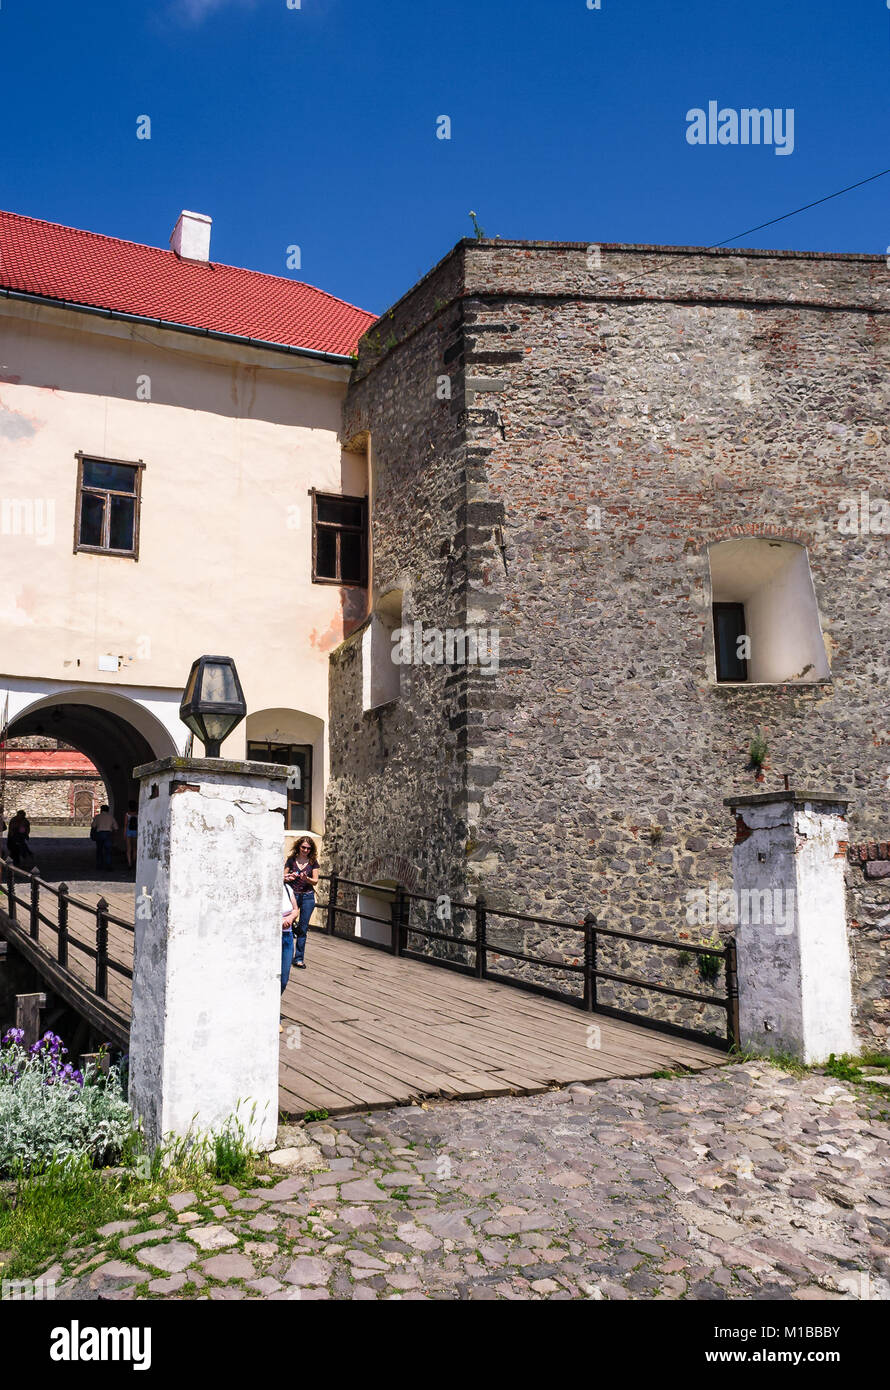 Tschechien, Ukraine - 25. MAI 2008: Eingang mit Brücke der Palanok Schloss. Alten Festung dient heute als Museum und ist beliebte touristische landm Stockfoto